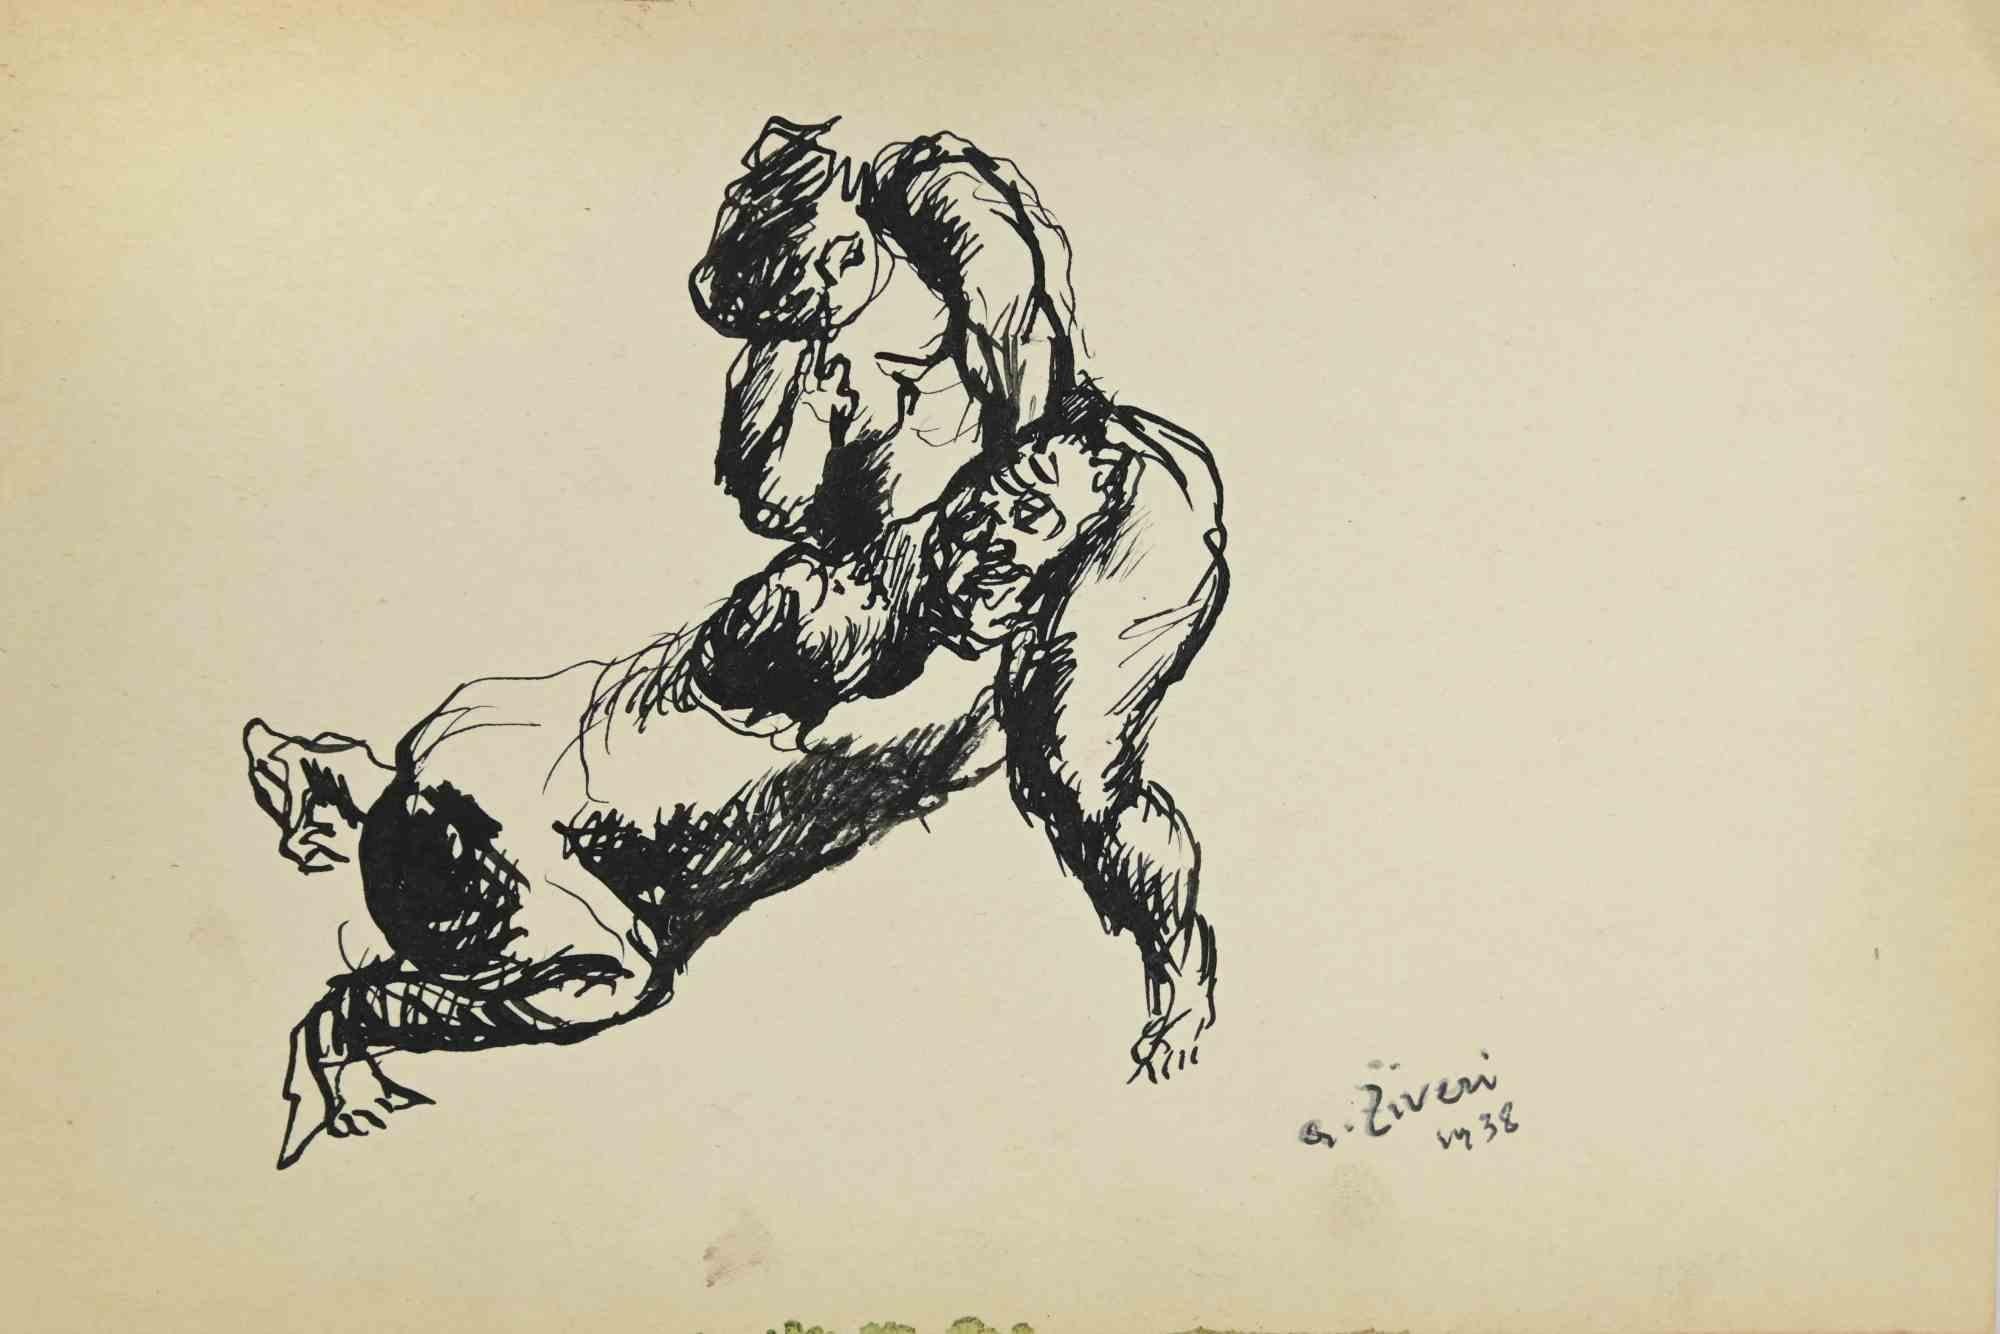 Erotic Scene ist eine Zeichnung von Alberto Ziveri aus dem Jahr 1938.

Tinte auf Papier.

Handsigniert und datiert.

In gutem Zustand mit leichten Stockflecken.

Das Kunstwerk wird durch geschickte Striche meisterhaft dargestellt.

Alberto Ziveri